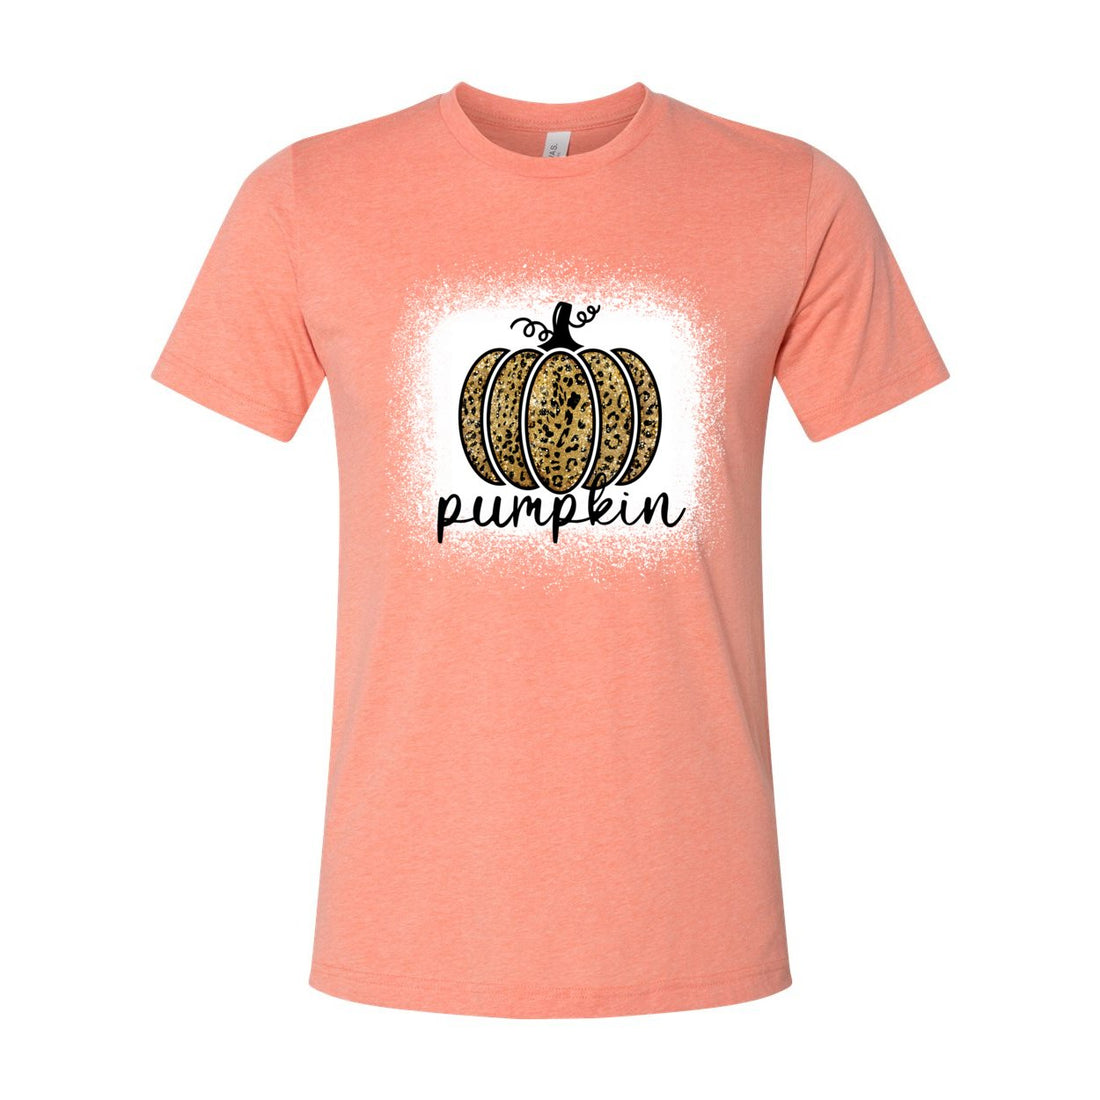 Pumpkin - T-Shirts - Positively Sassy - Pumpkin